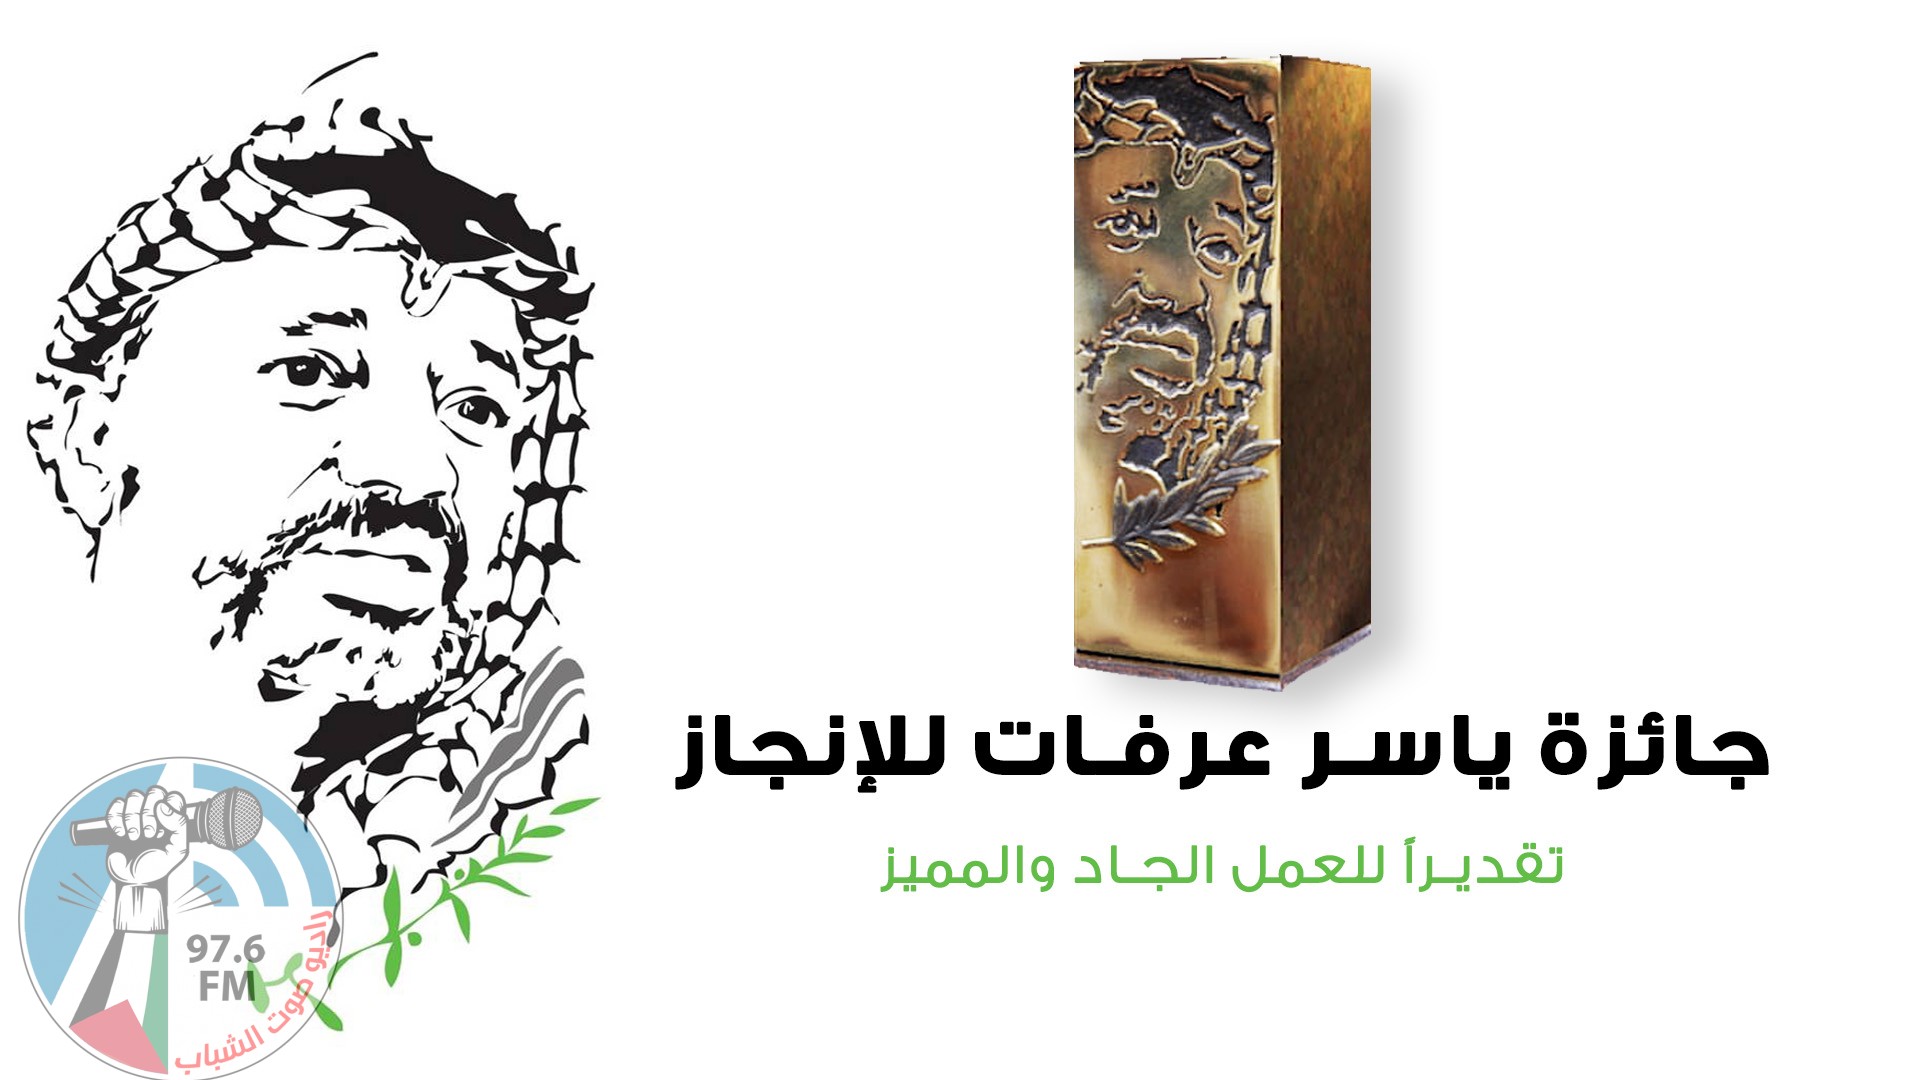 مؤسسة ياسر عرفات تفتح باب الترشيح لجائزة ياسر عرفات للإنجاز للعام 2020